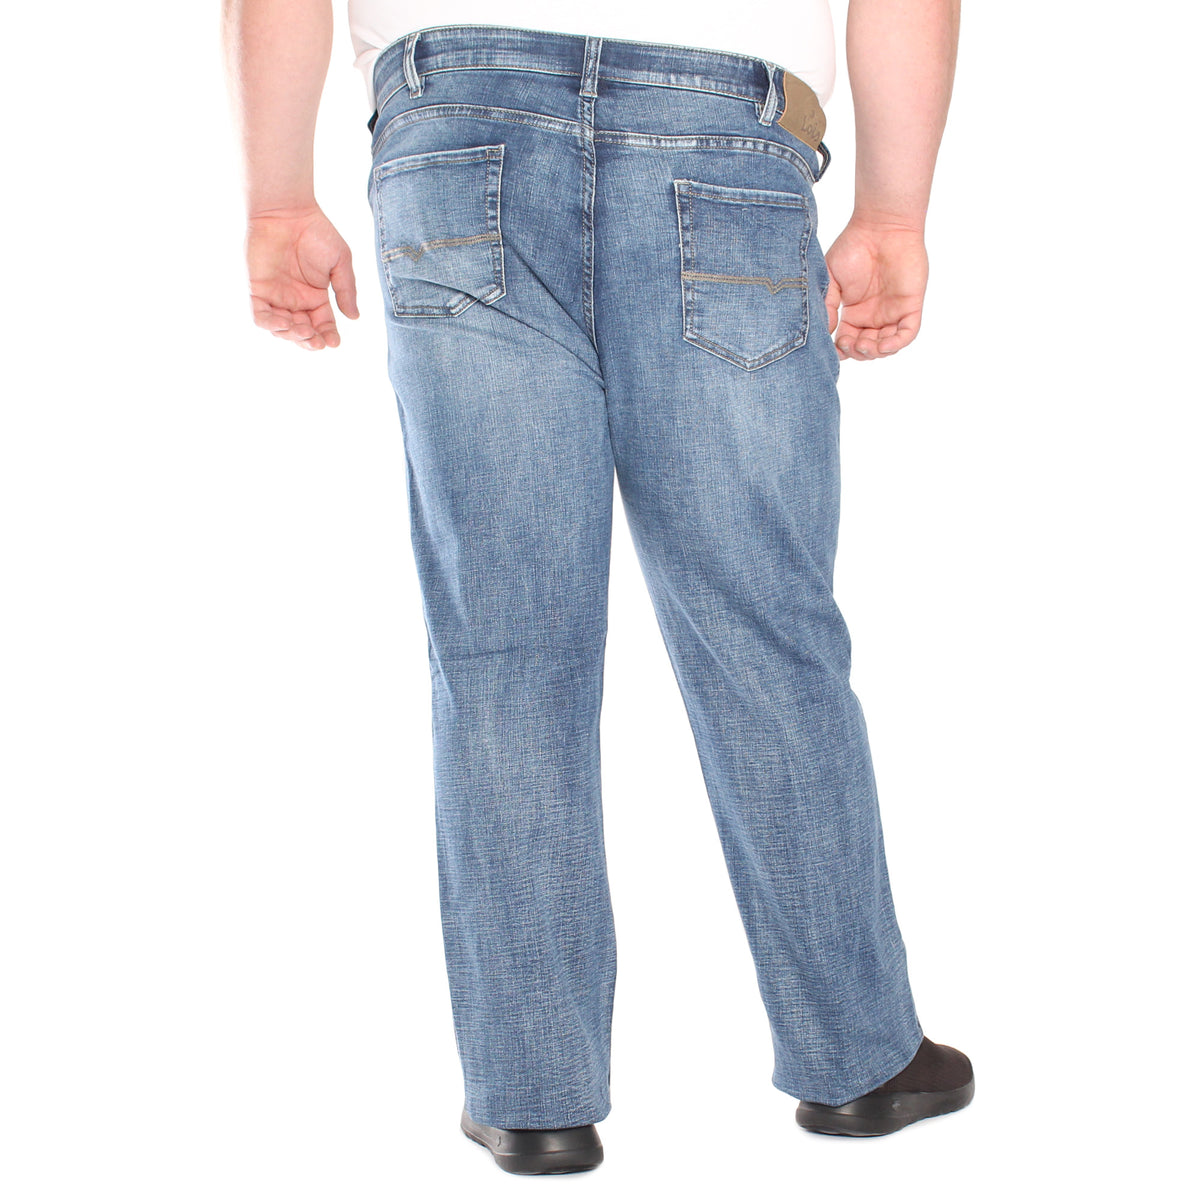 Stretch Jeans, Regular Waist